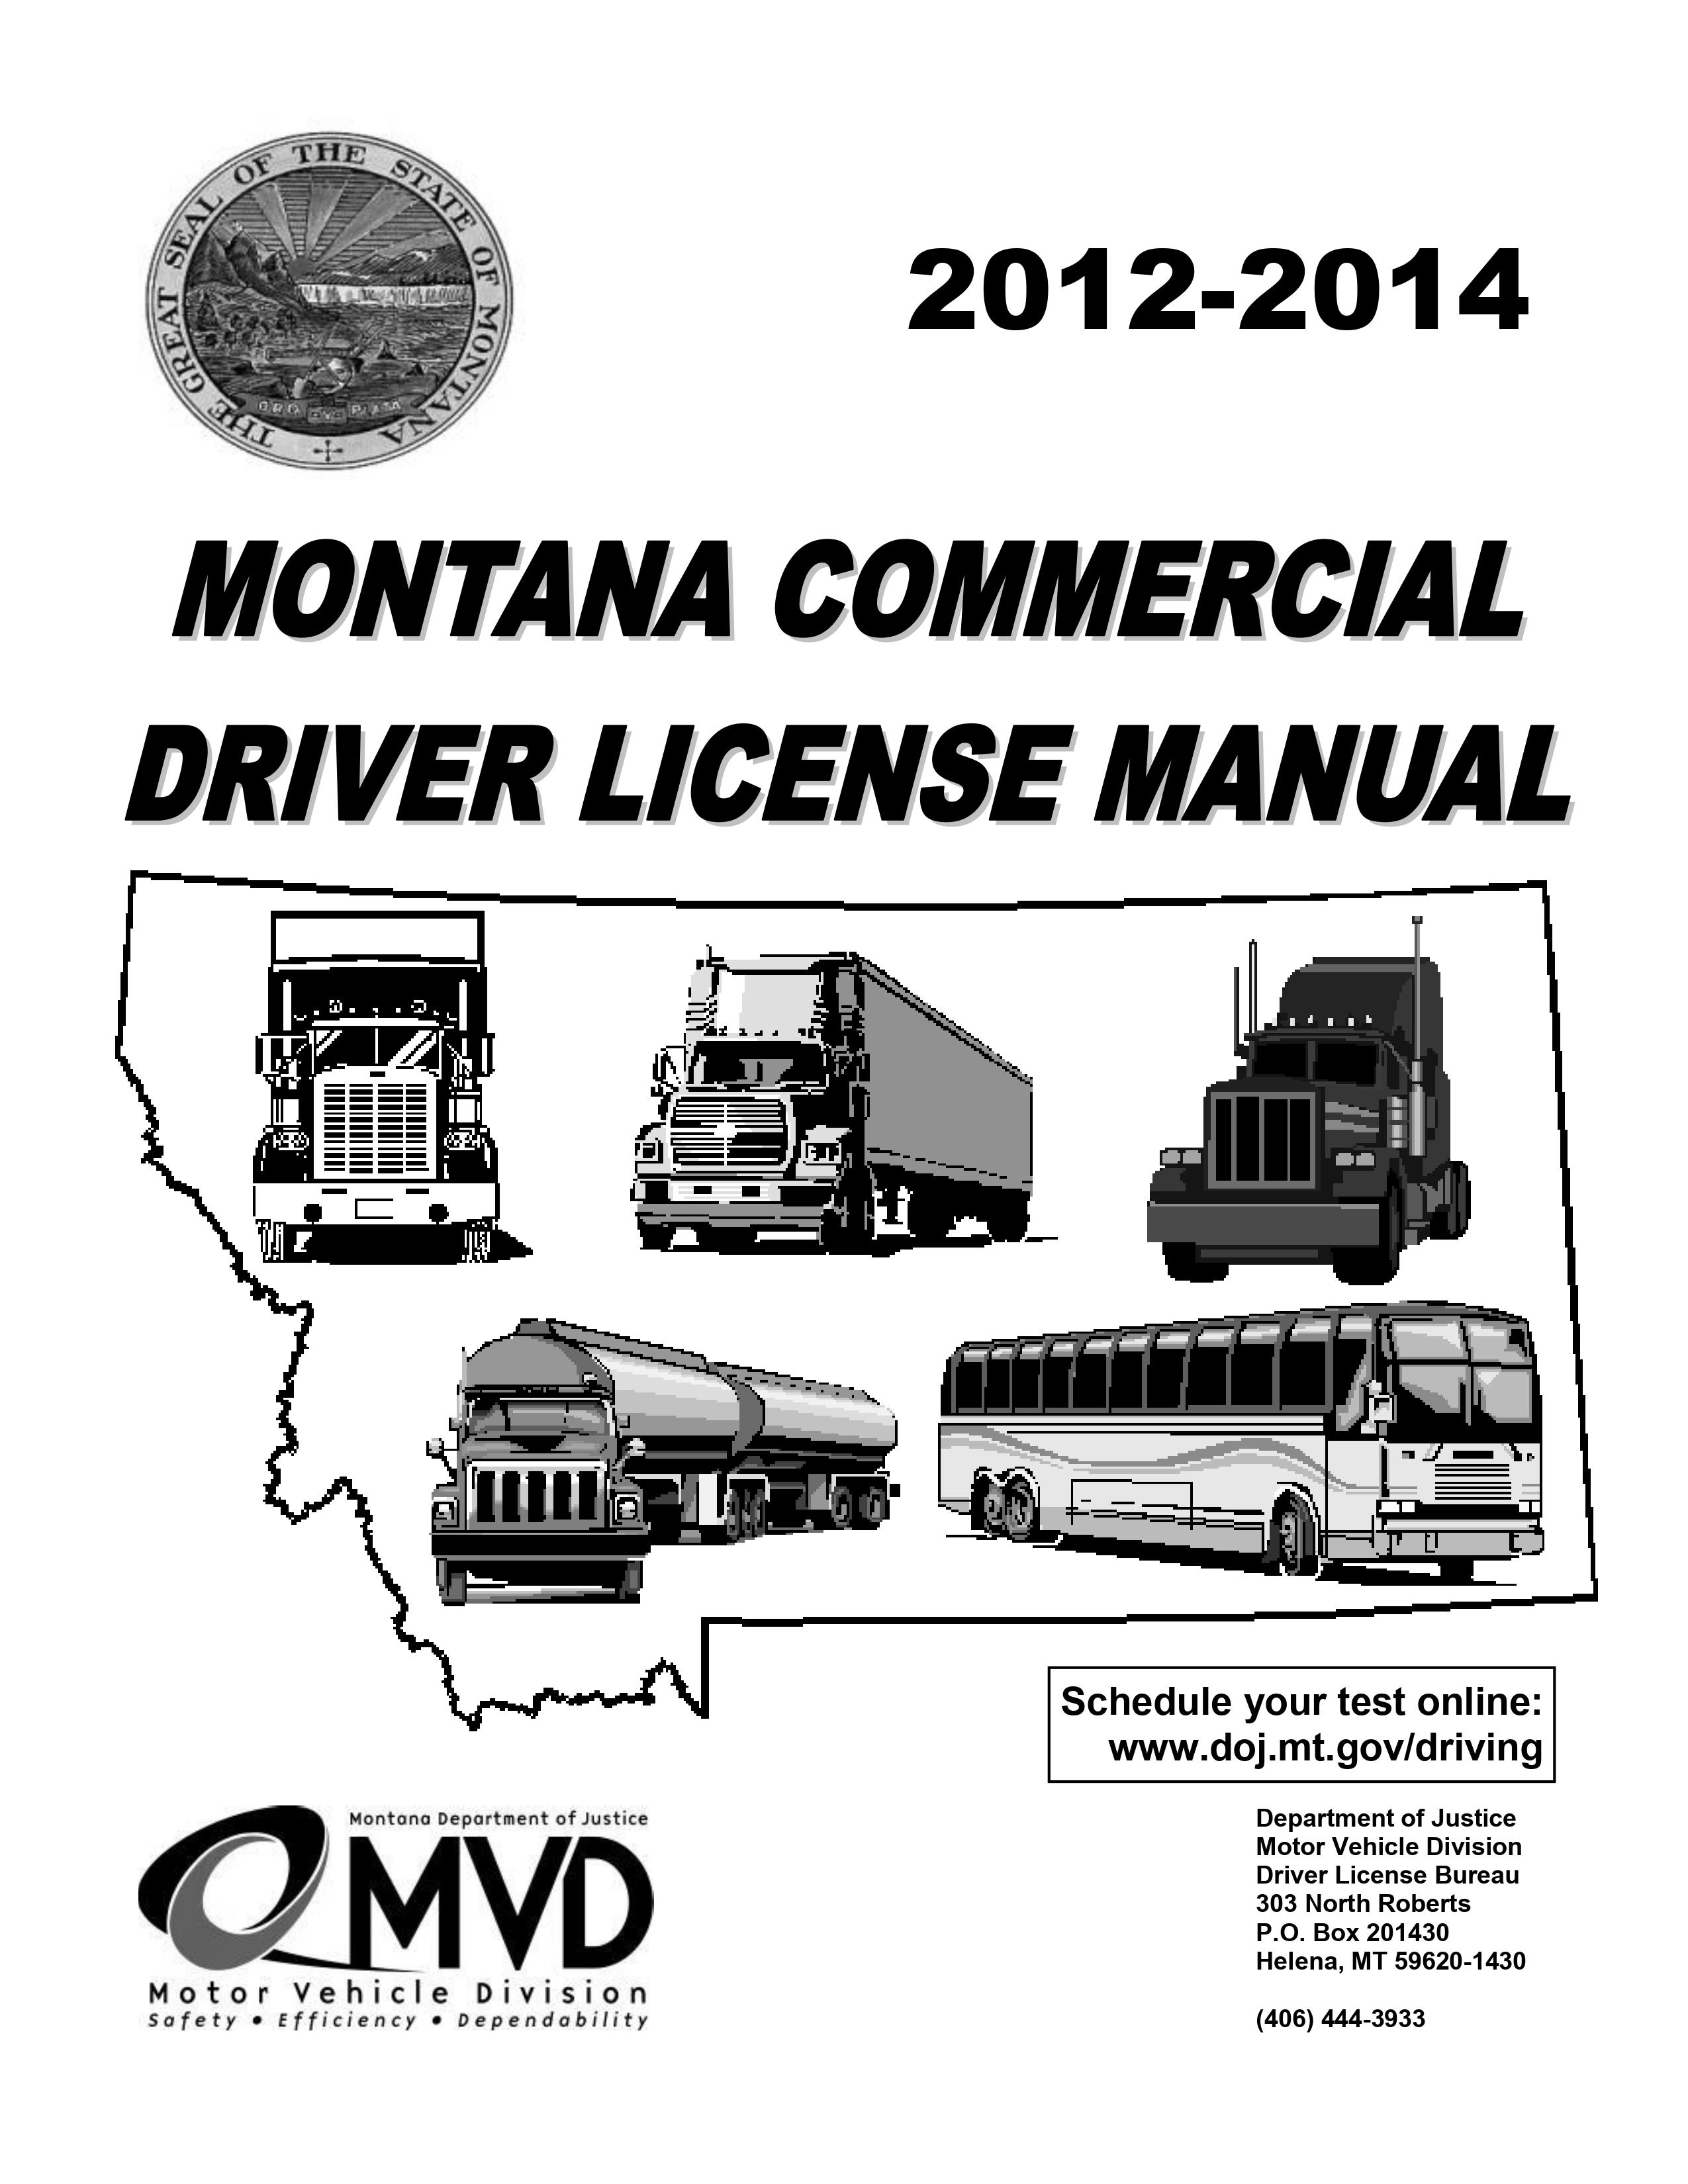 Montana's CDL Manual